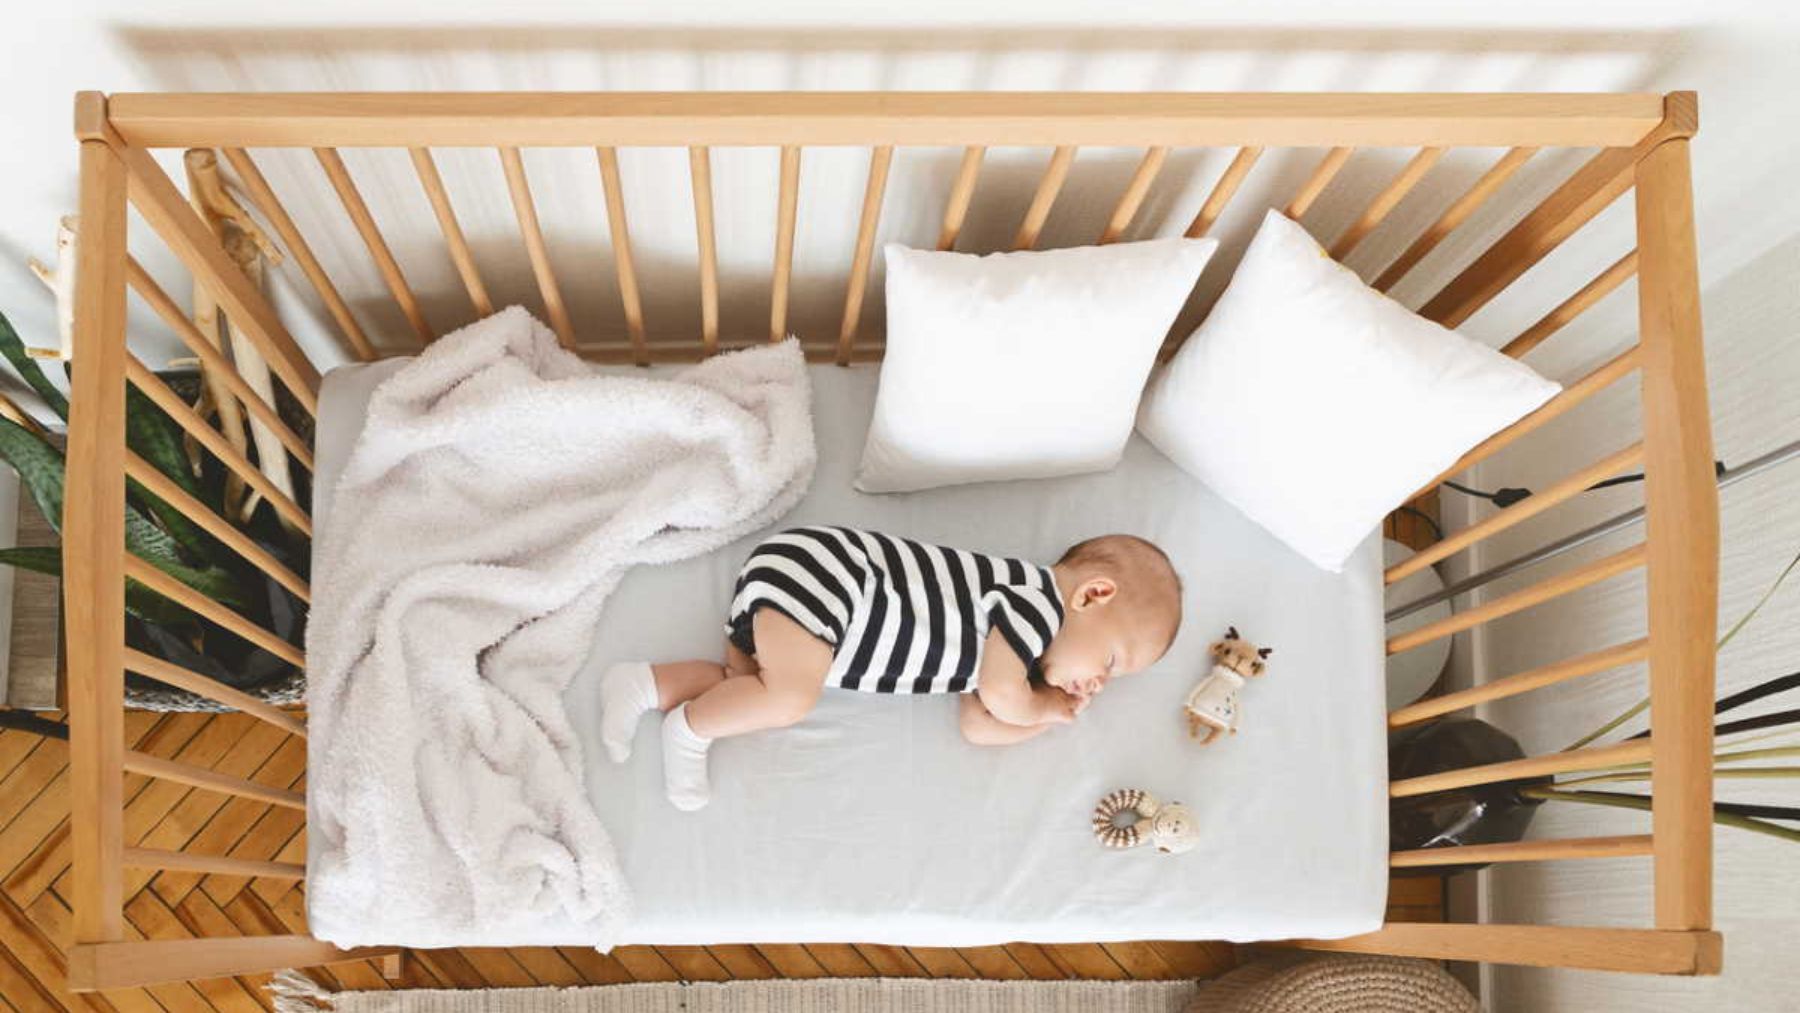 veneno Hacia arriba recomendar Cómo elegir la ropa de cama de la cuna del bebé